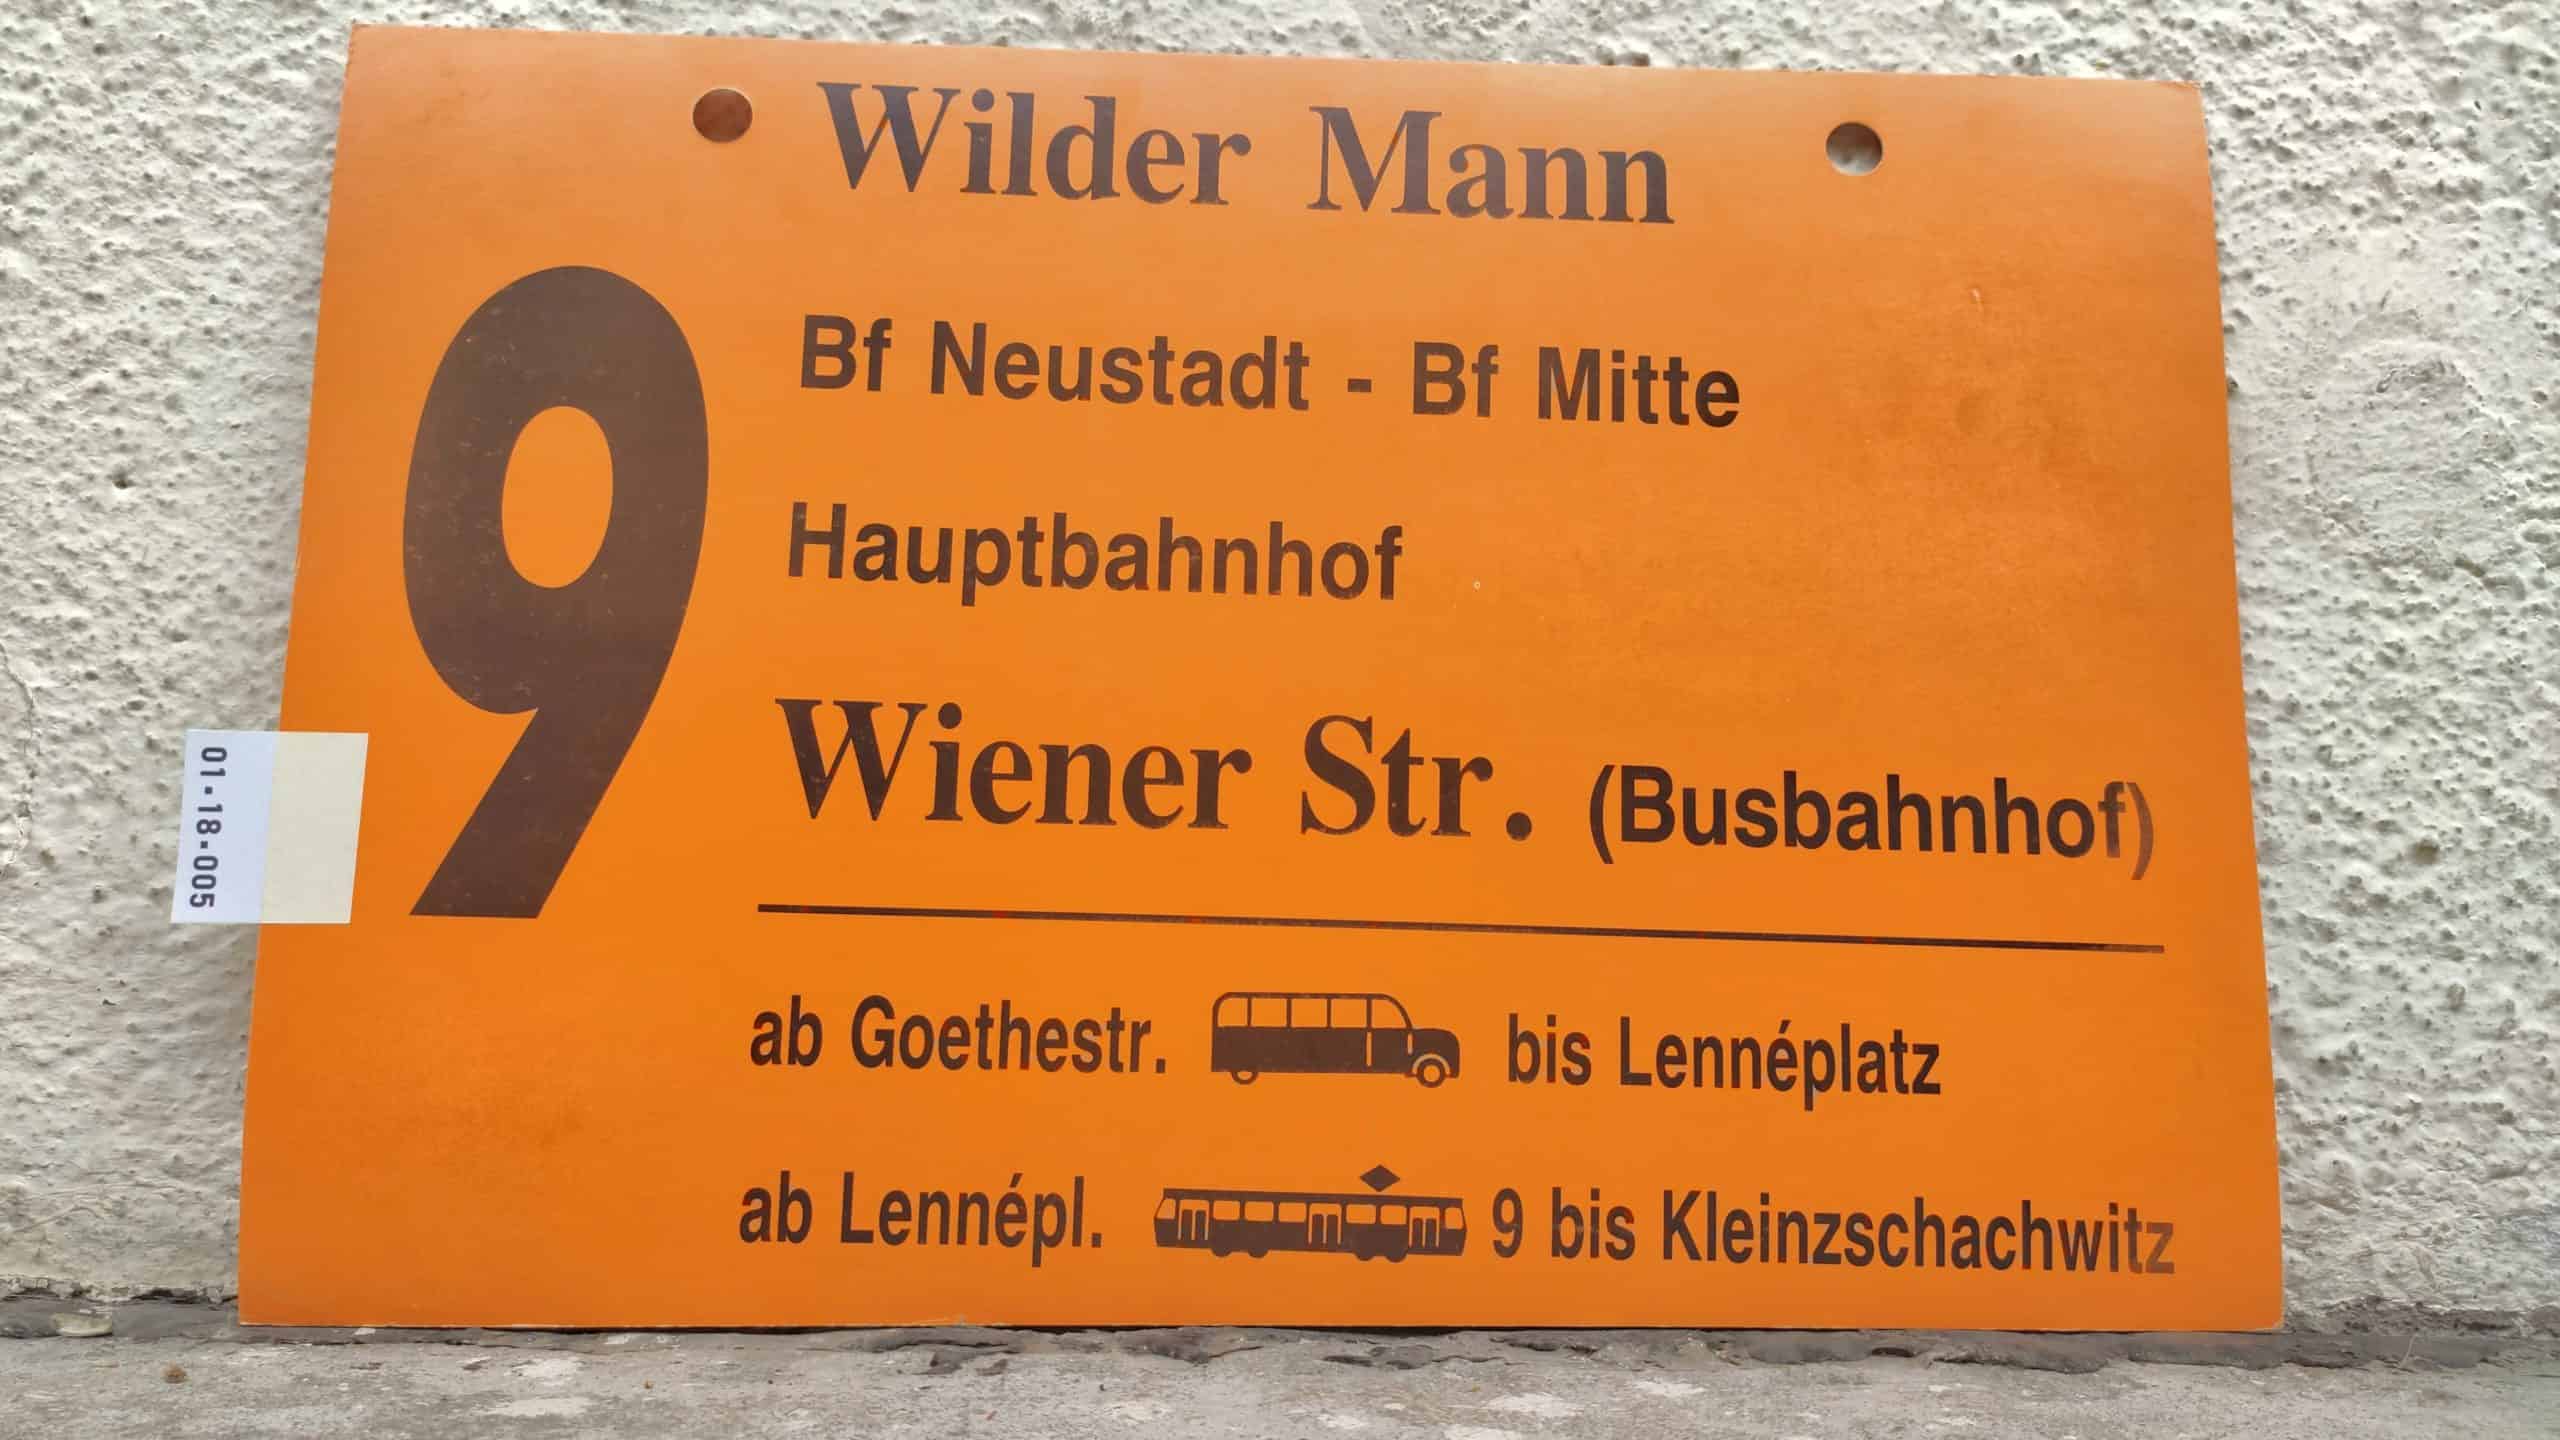 9 Wilder Mann – Wiener Str. (Busbahnhof)